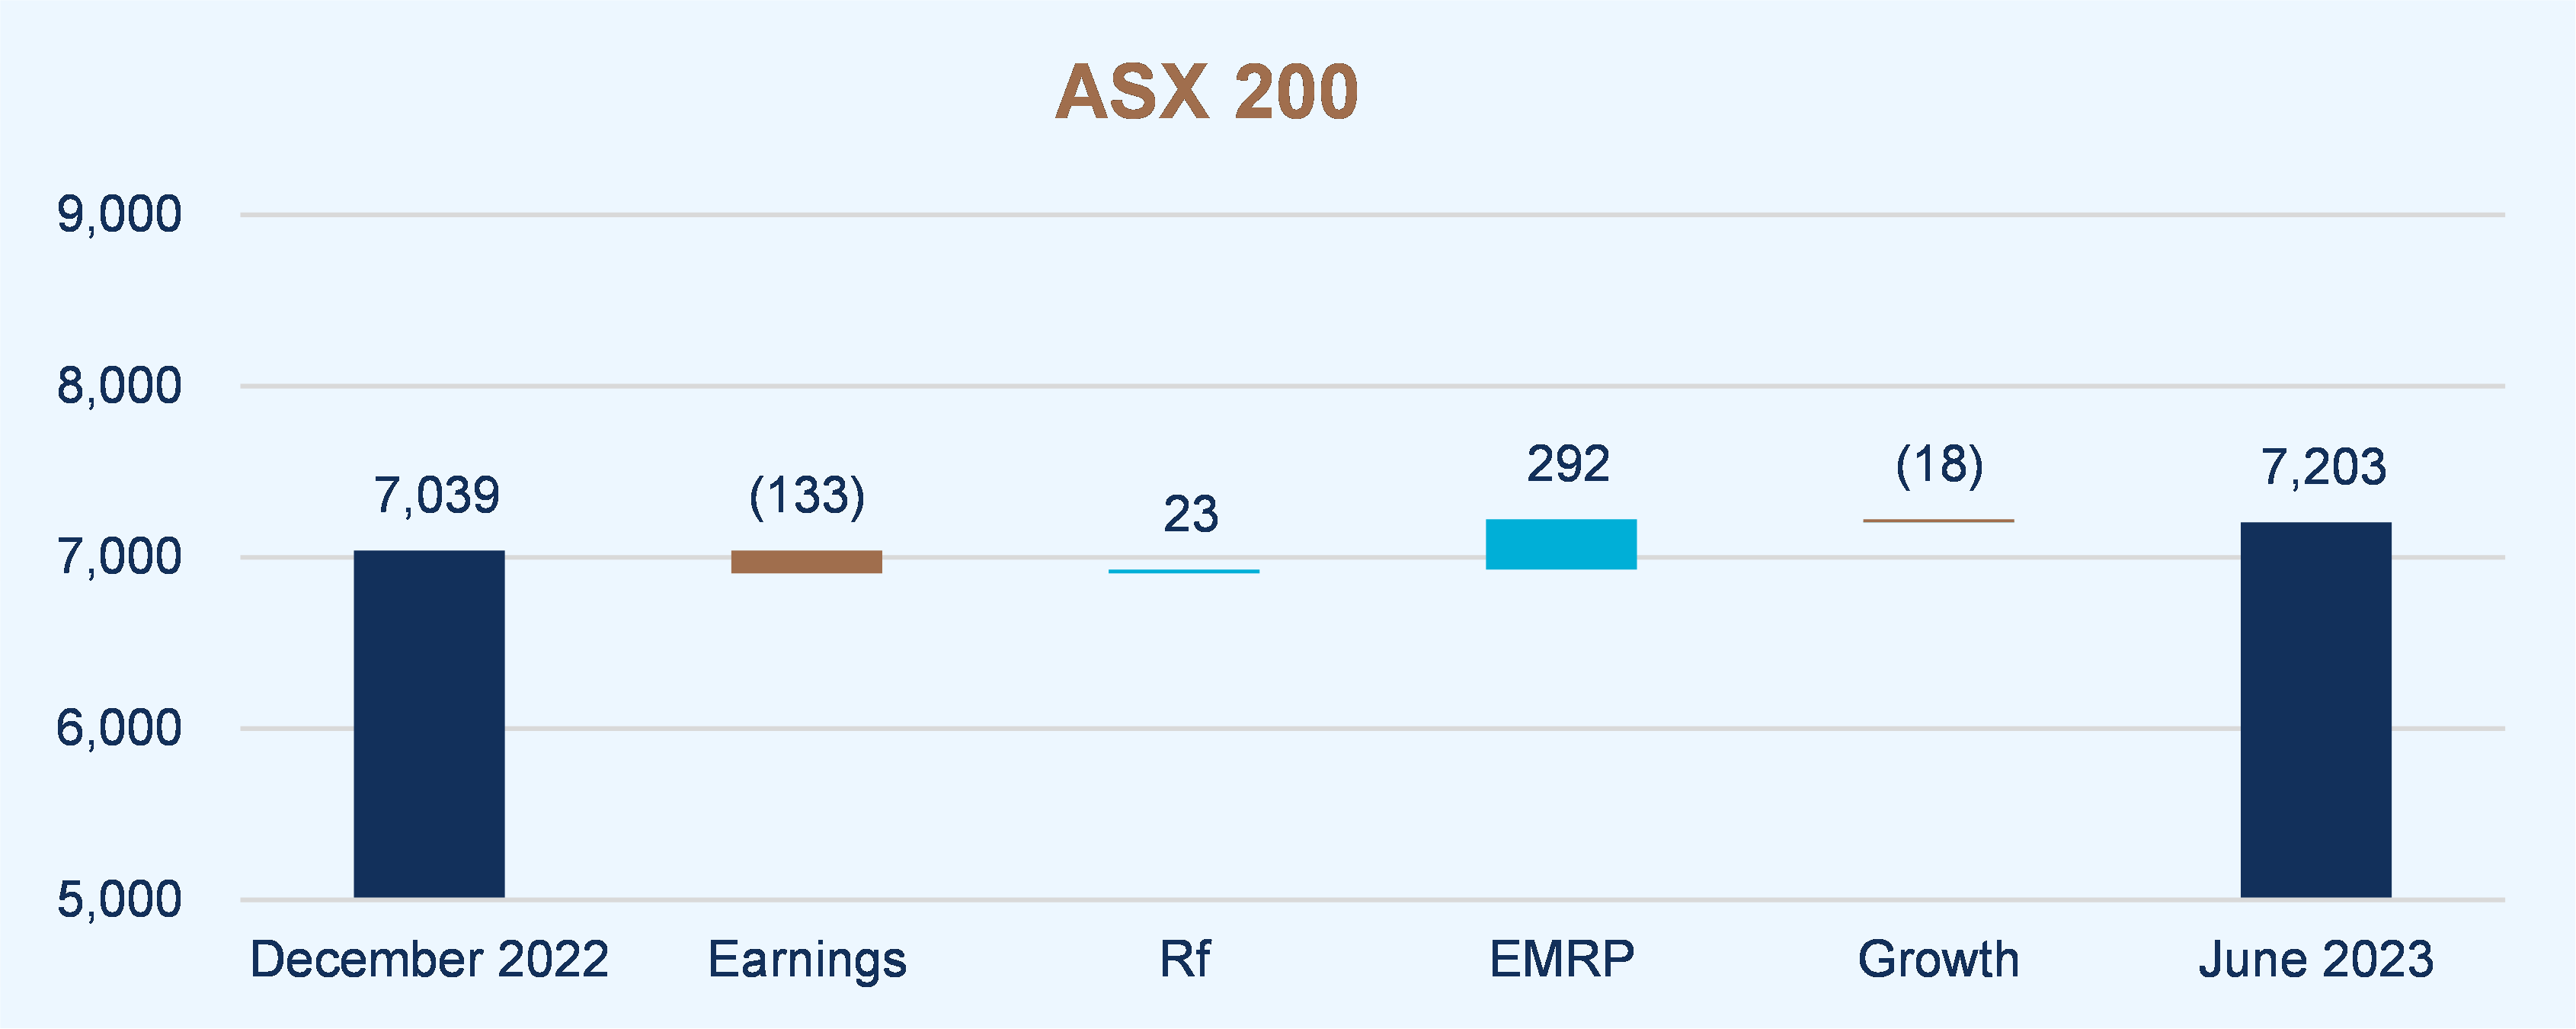 ASX 200